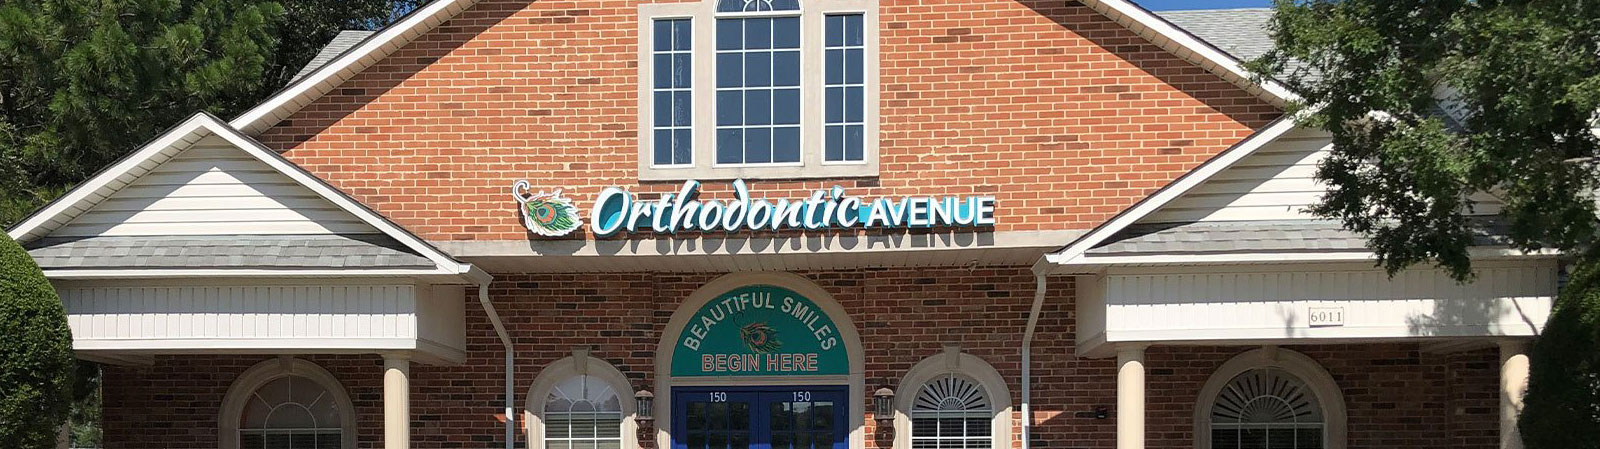 Orthodontic Avenue - Exterior